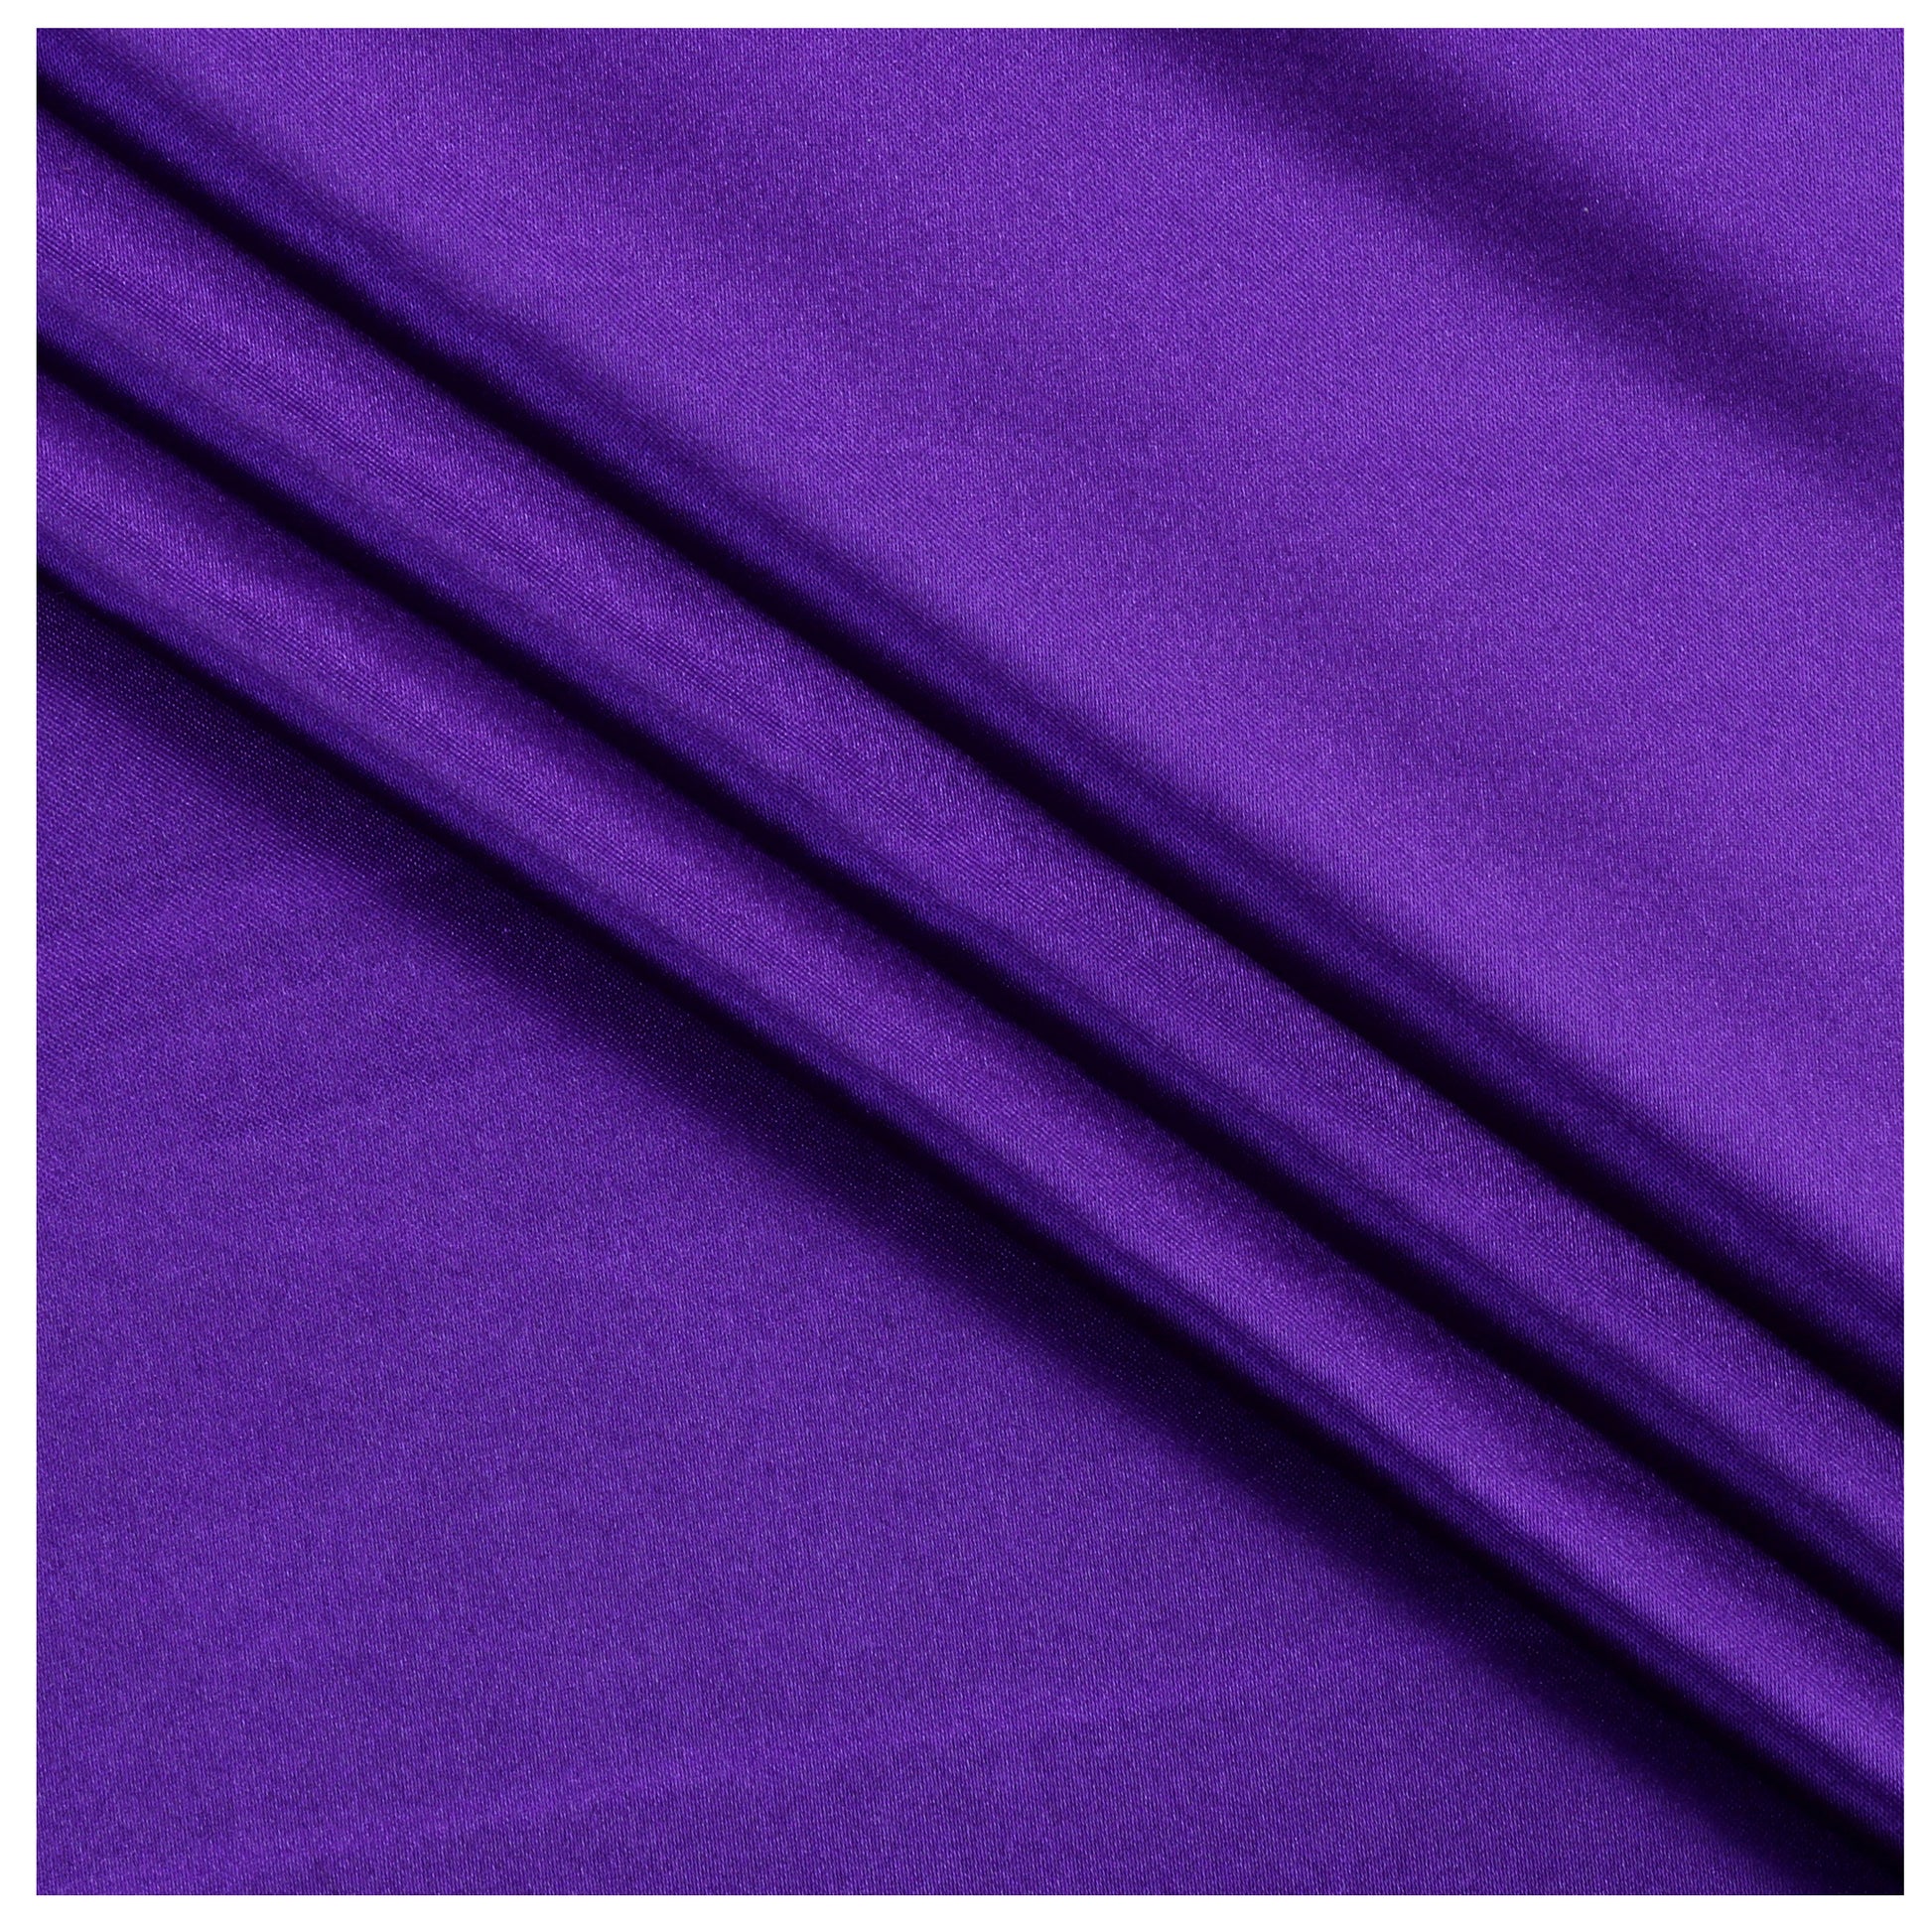 Cadbury Purple,96384272-729e-400b-b4b1-e9a11da92d12